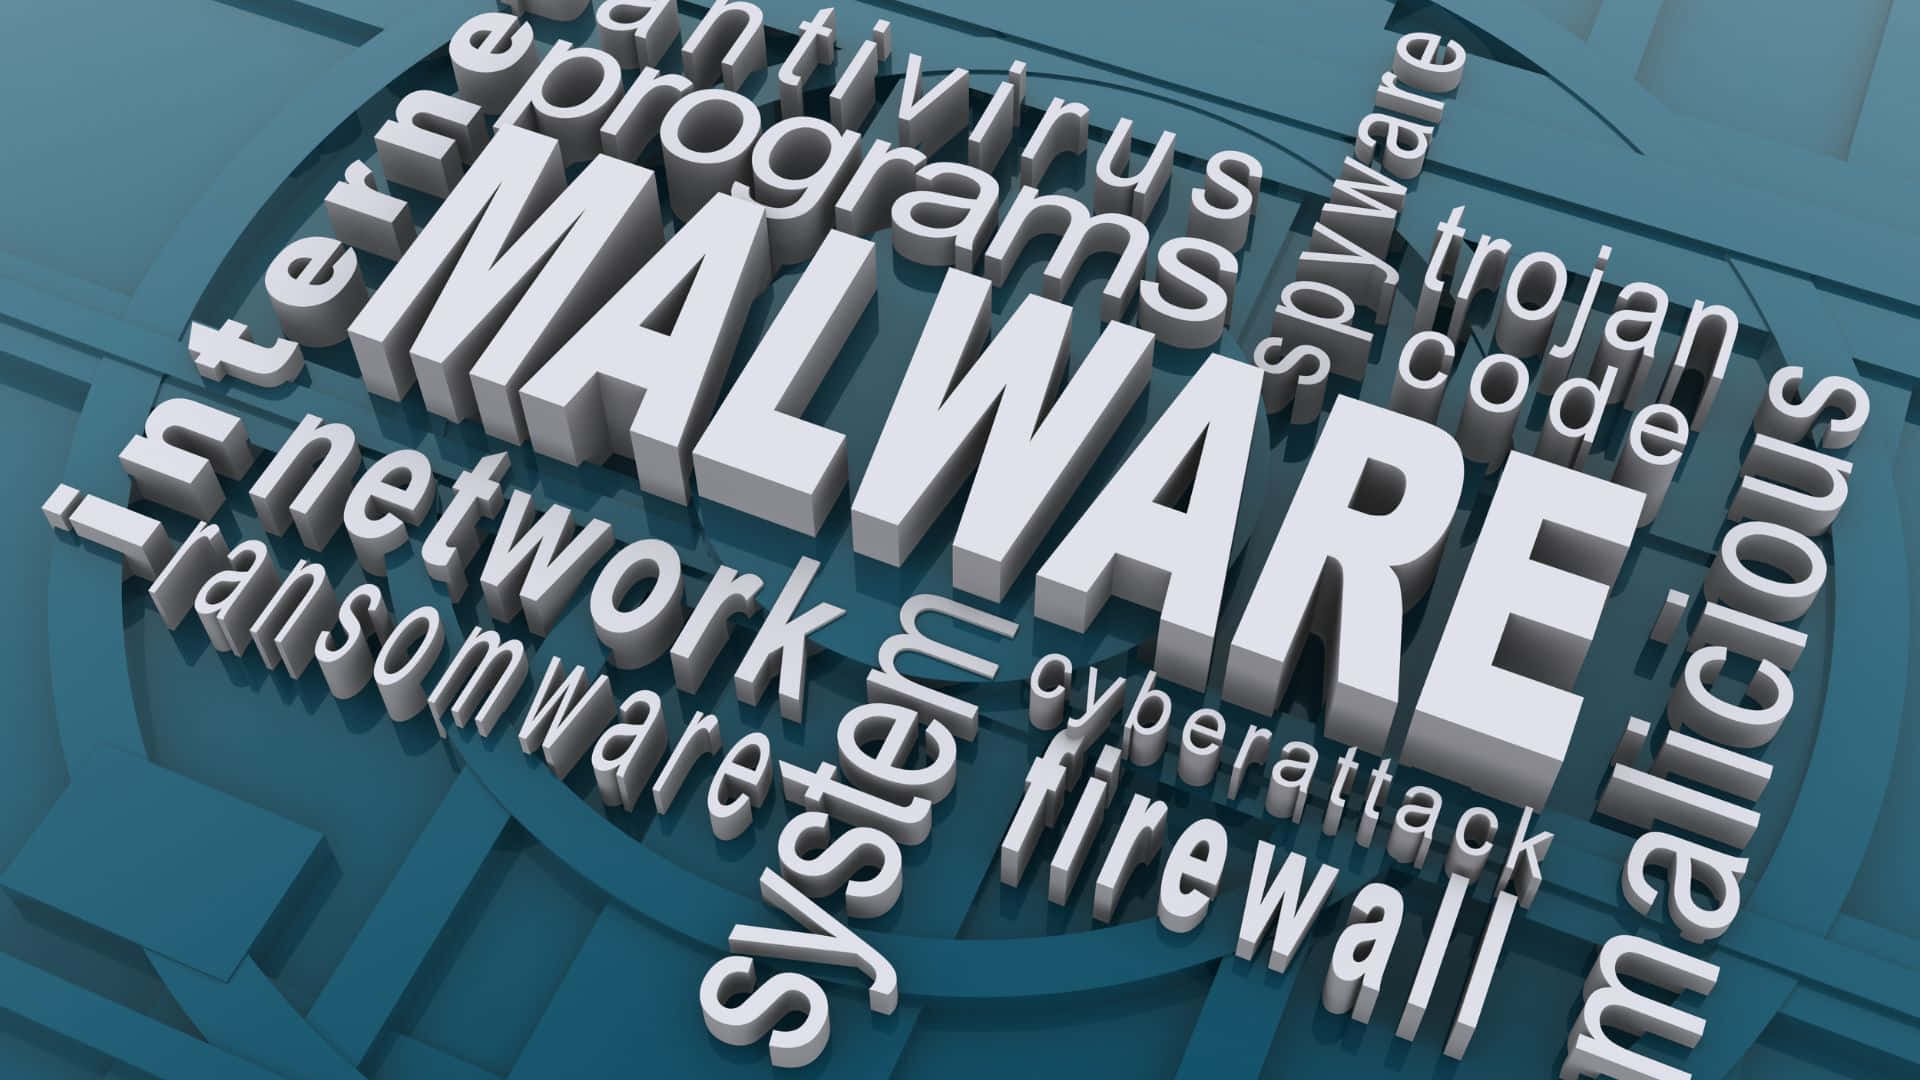 Termer og objekter, som kvalificerer som malware Wallpaper